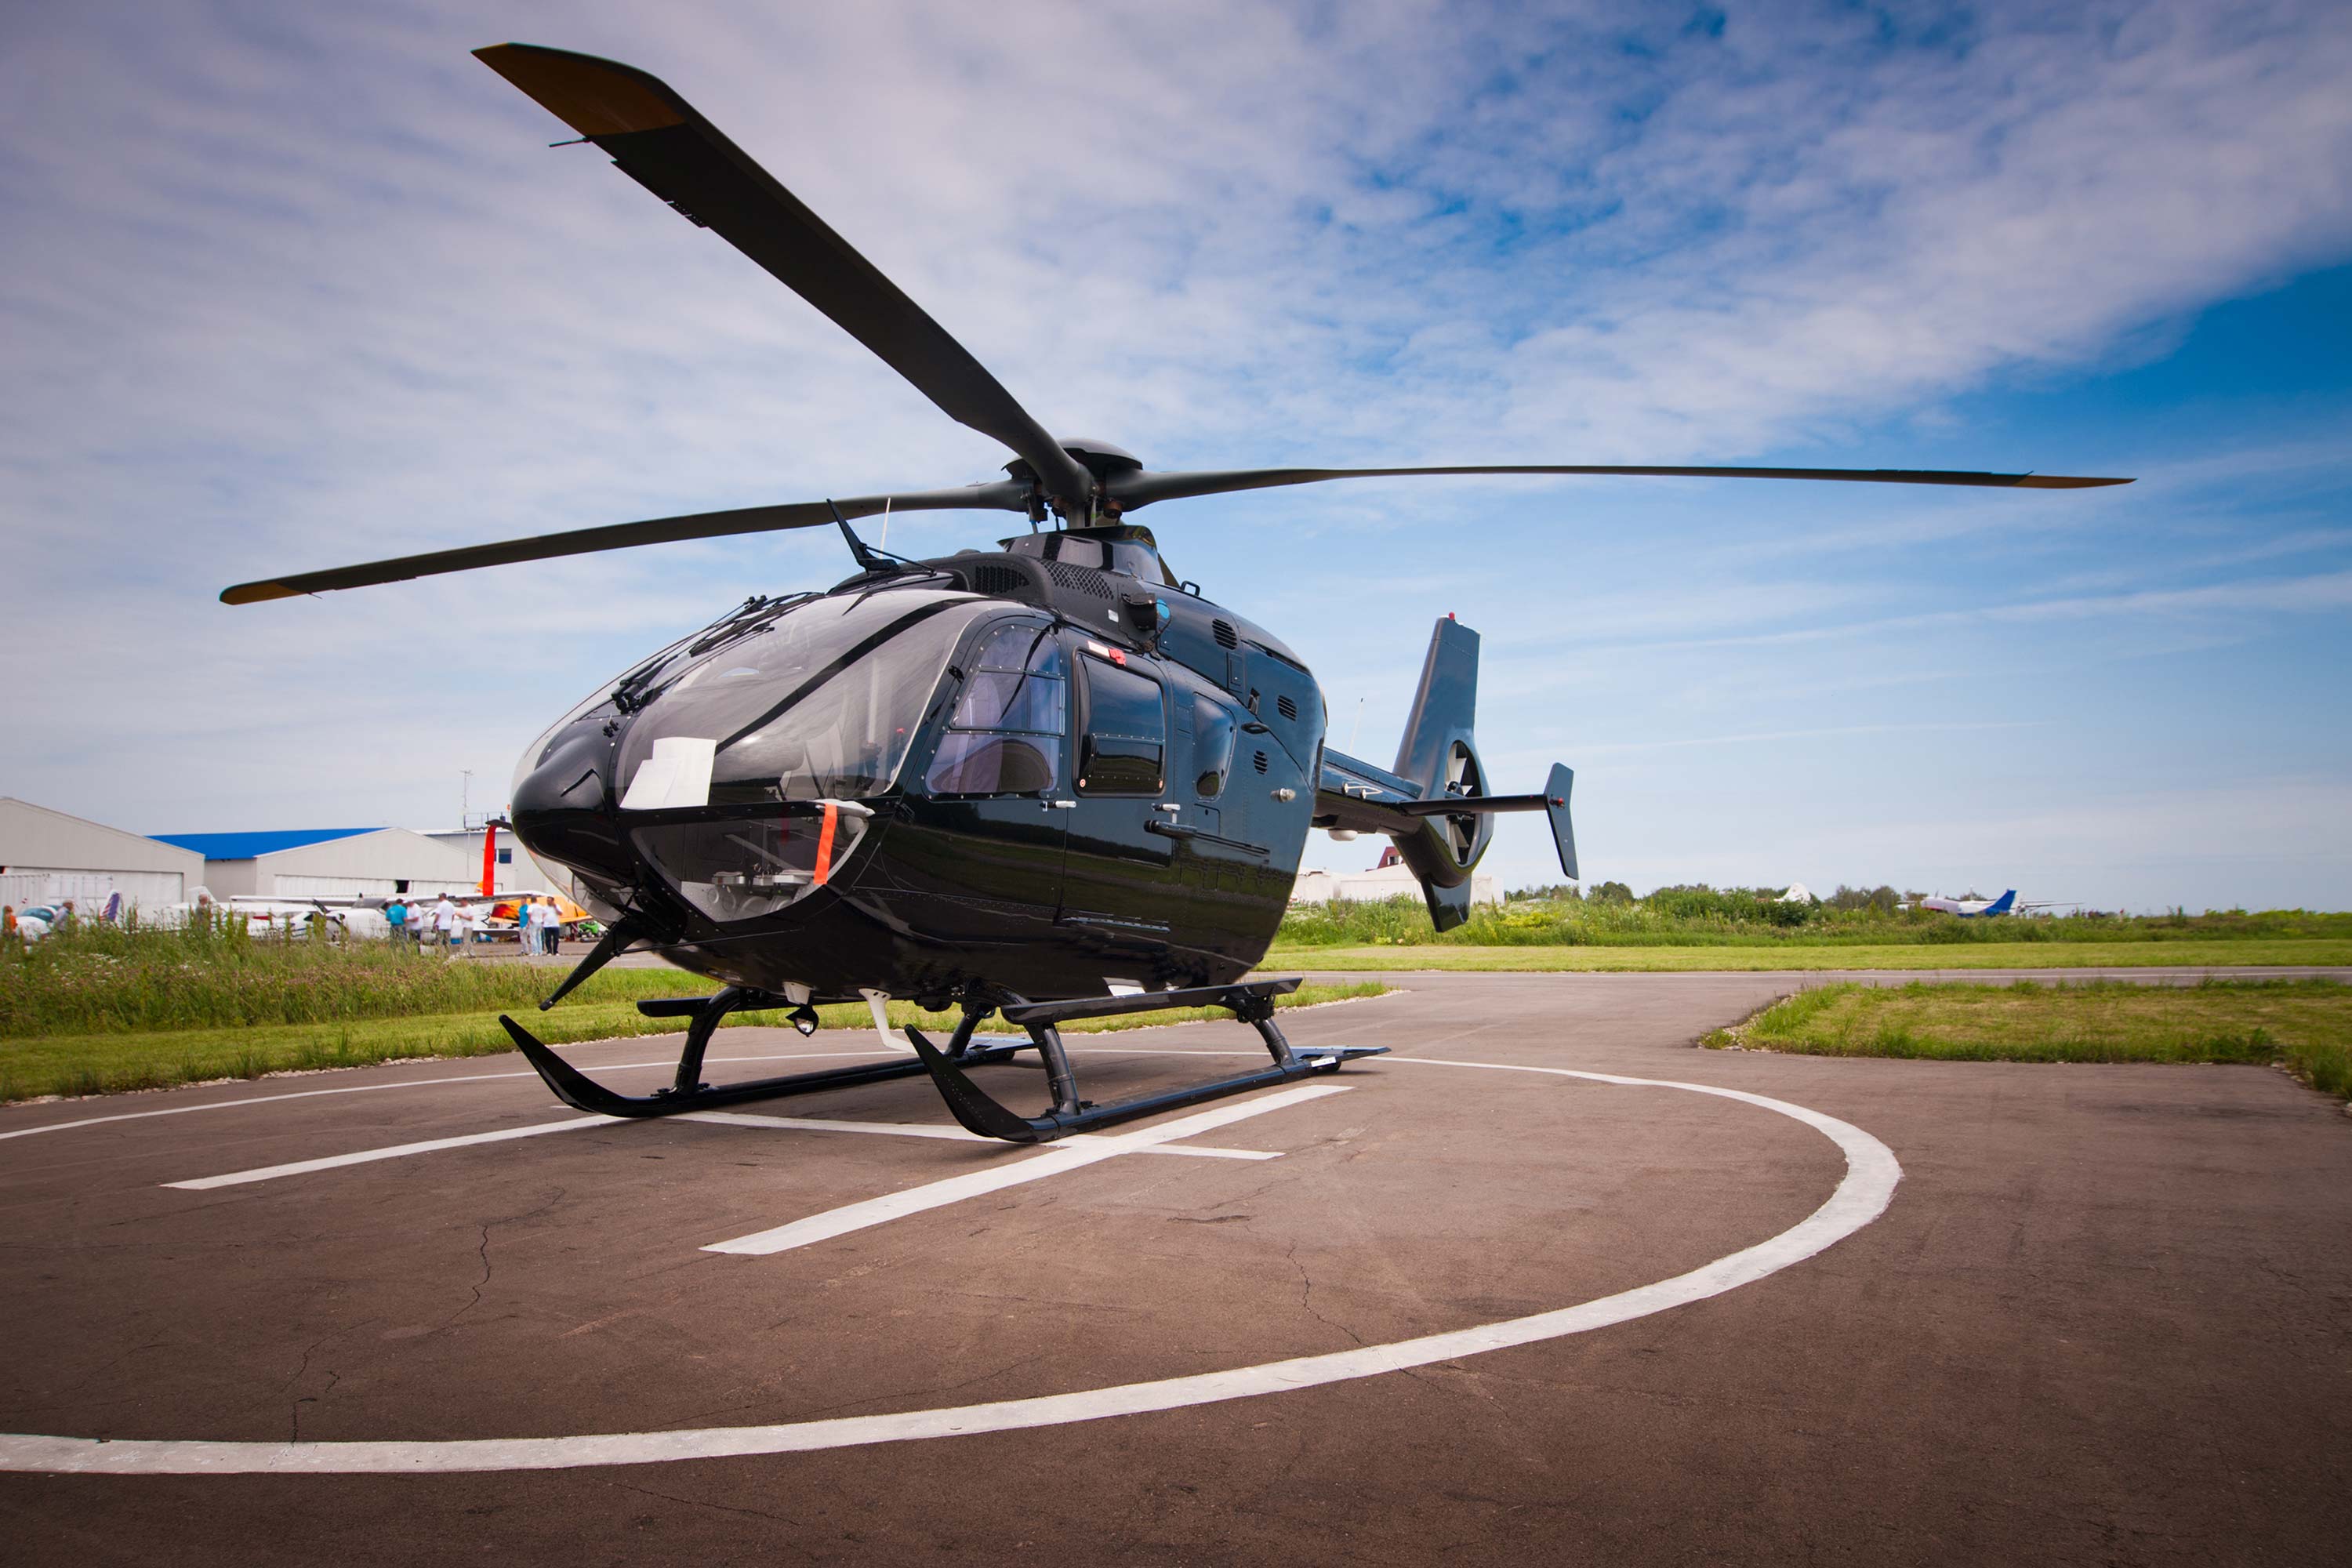 Bakıda üç helikopter satılır – Qiyməti 200 min... - VİDEO